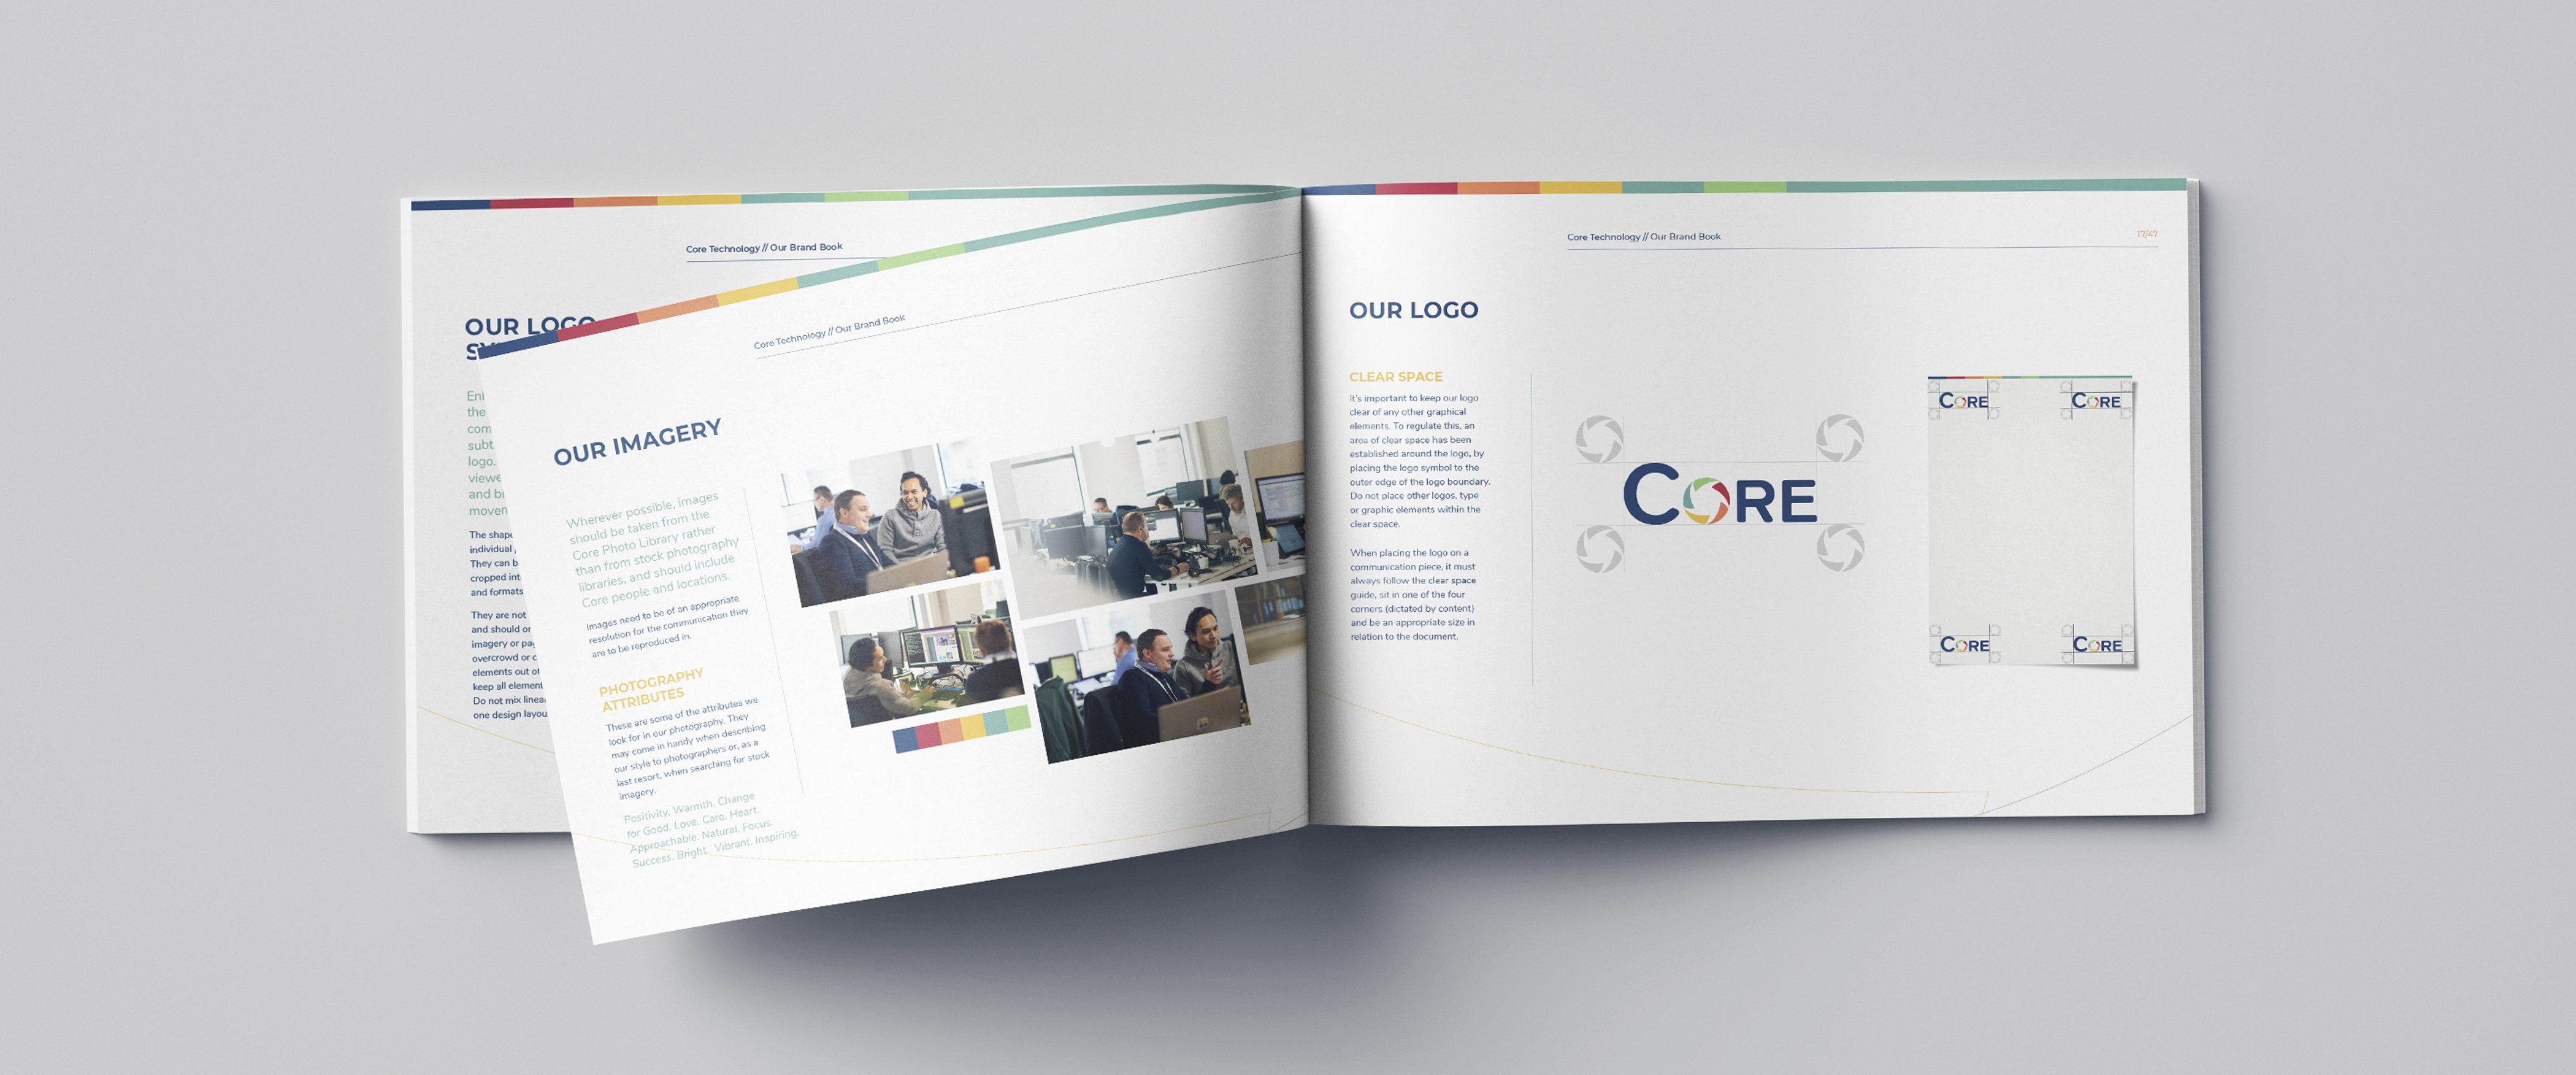 Core Brand Book open on a desk